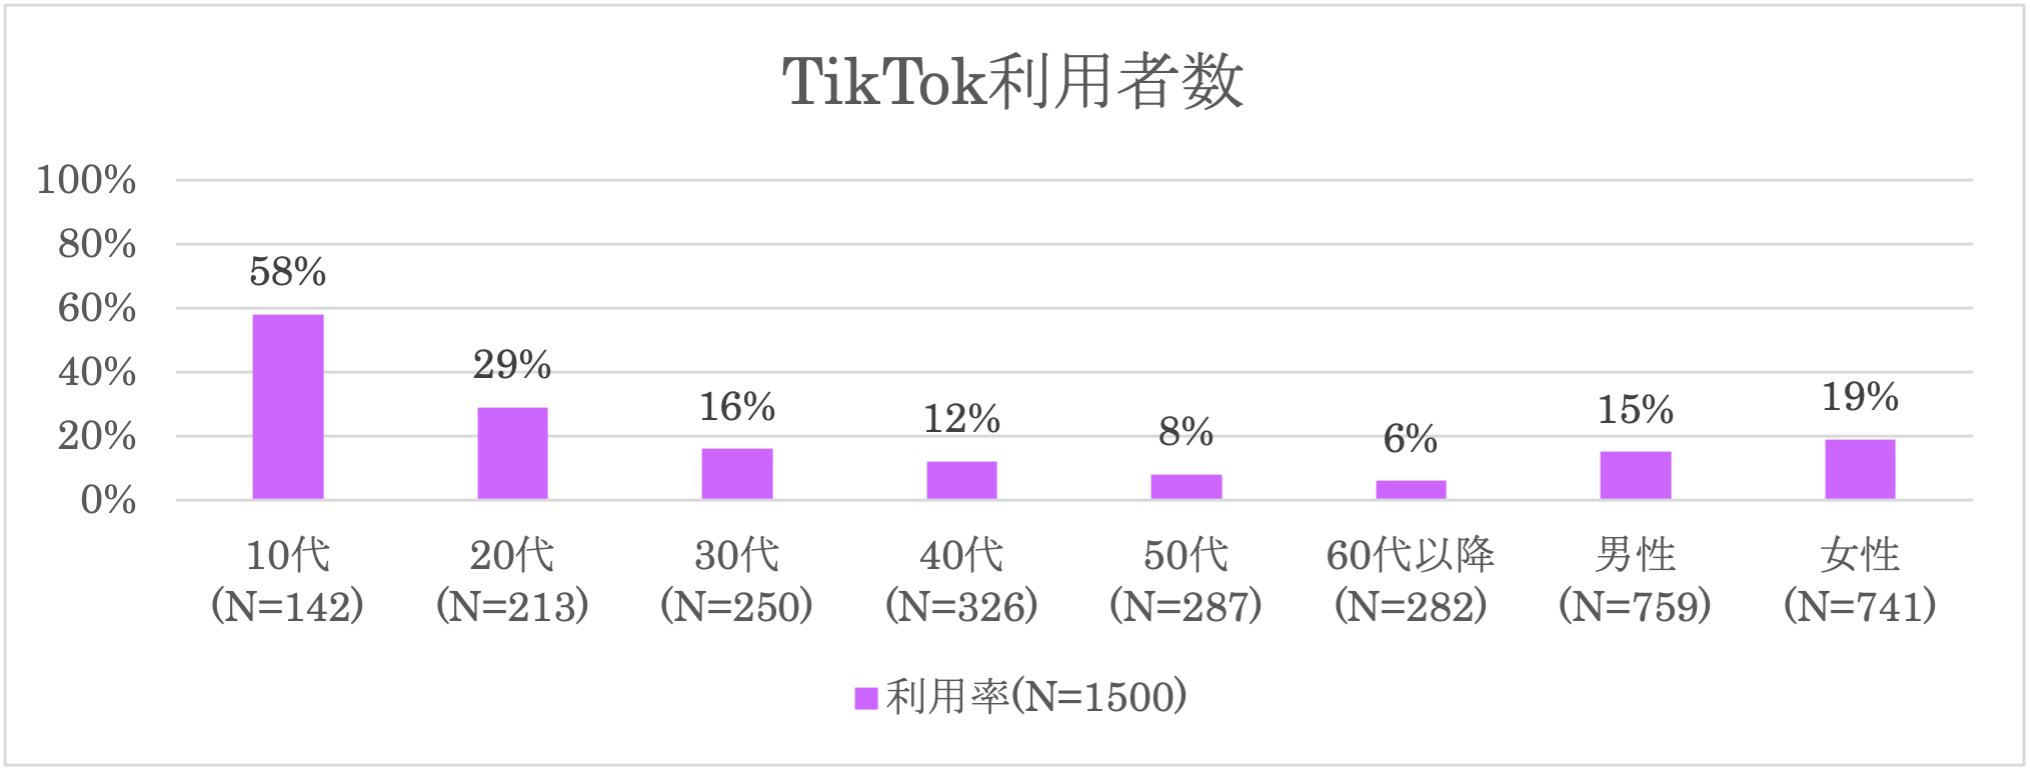 TikTokの利用者数